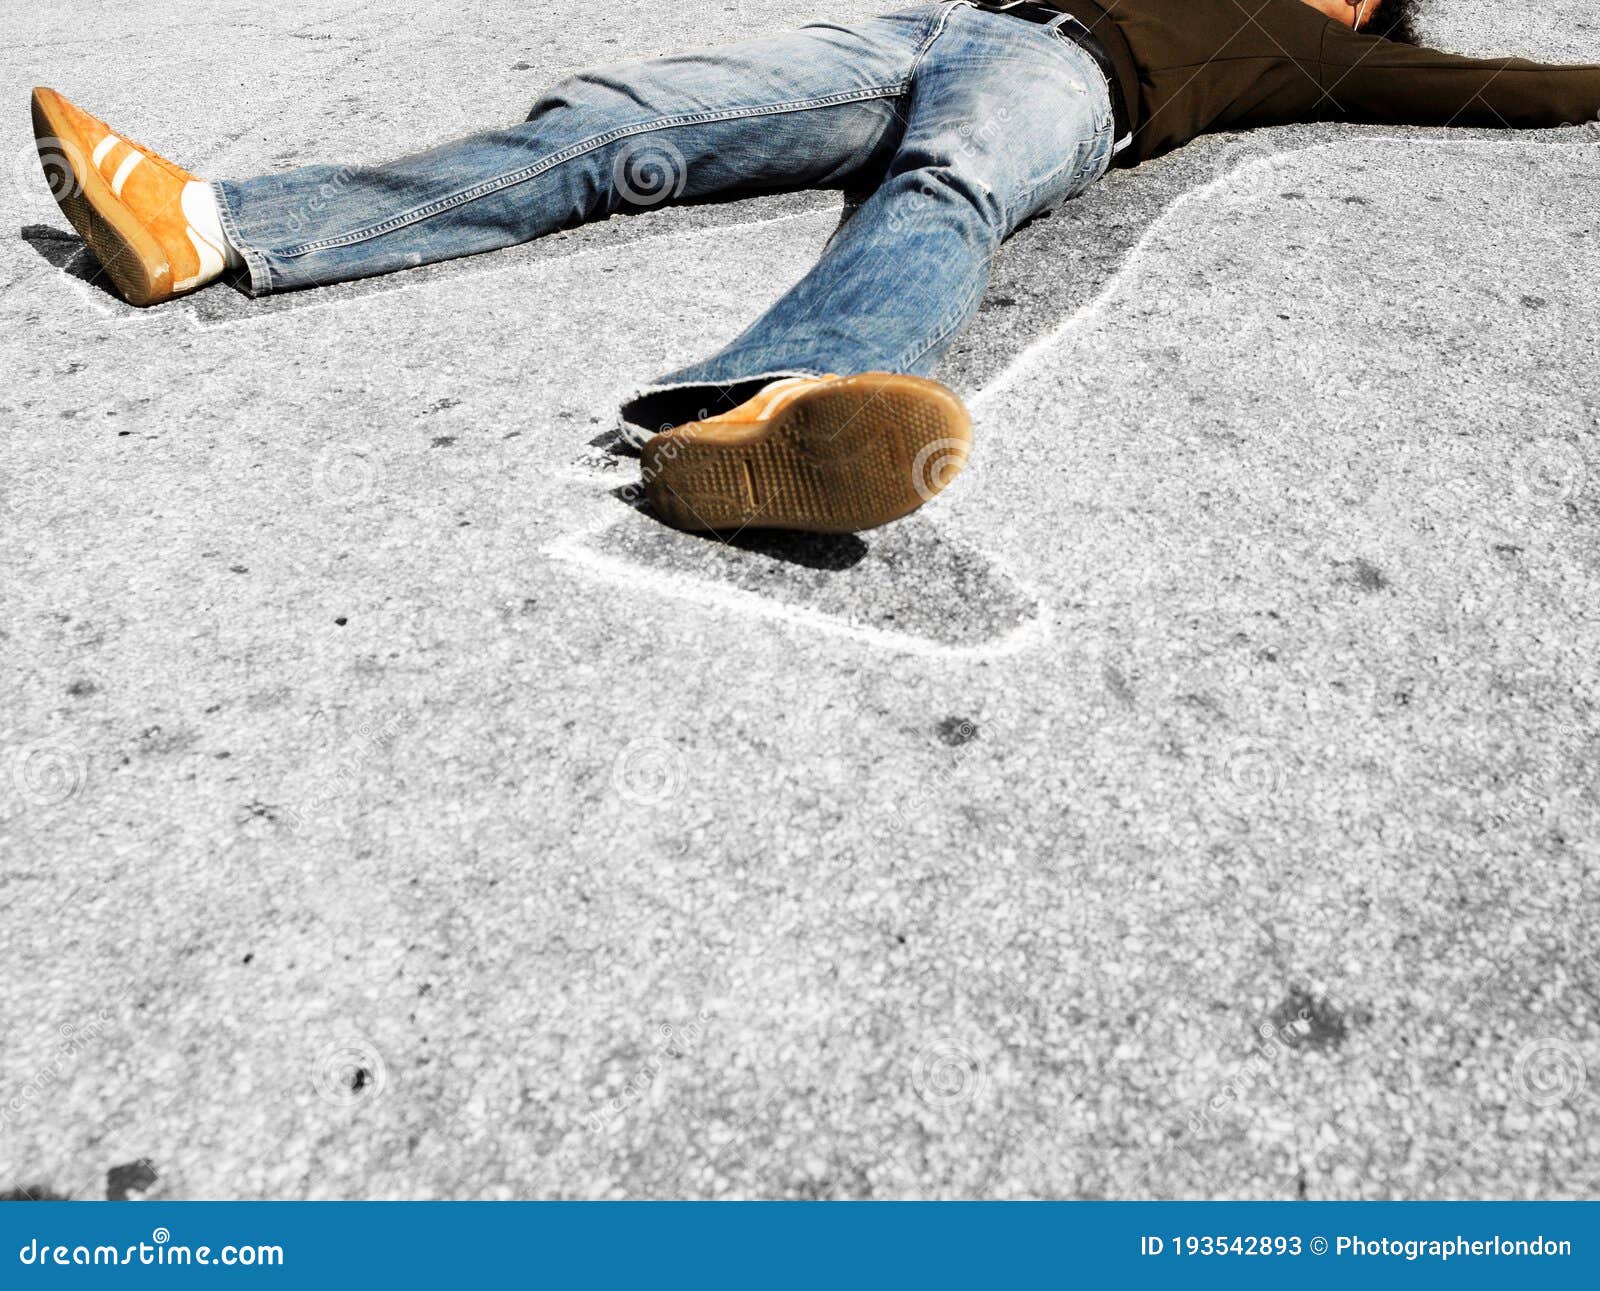 Uomo Sdraiato Sull'uomo Morto, Gesso Di Calcestruzzo Immagine Stock -  Immagine di estratto, morte: 193542893